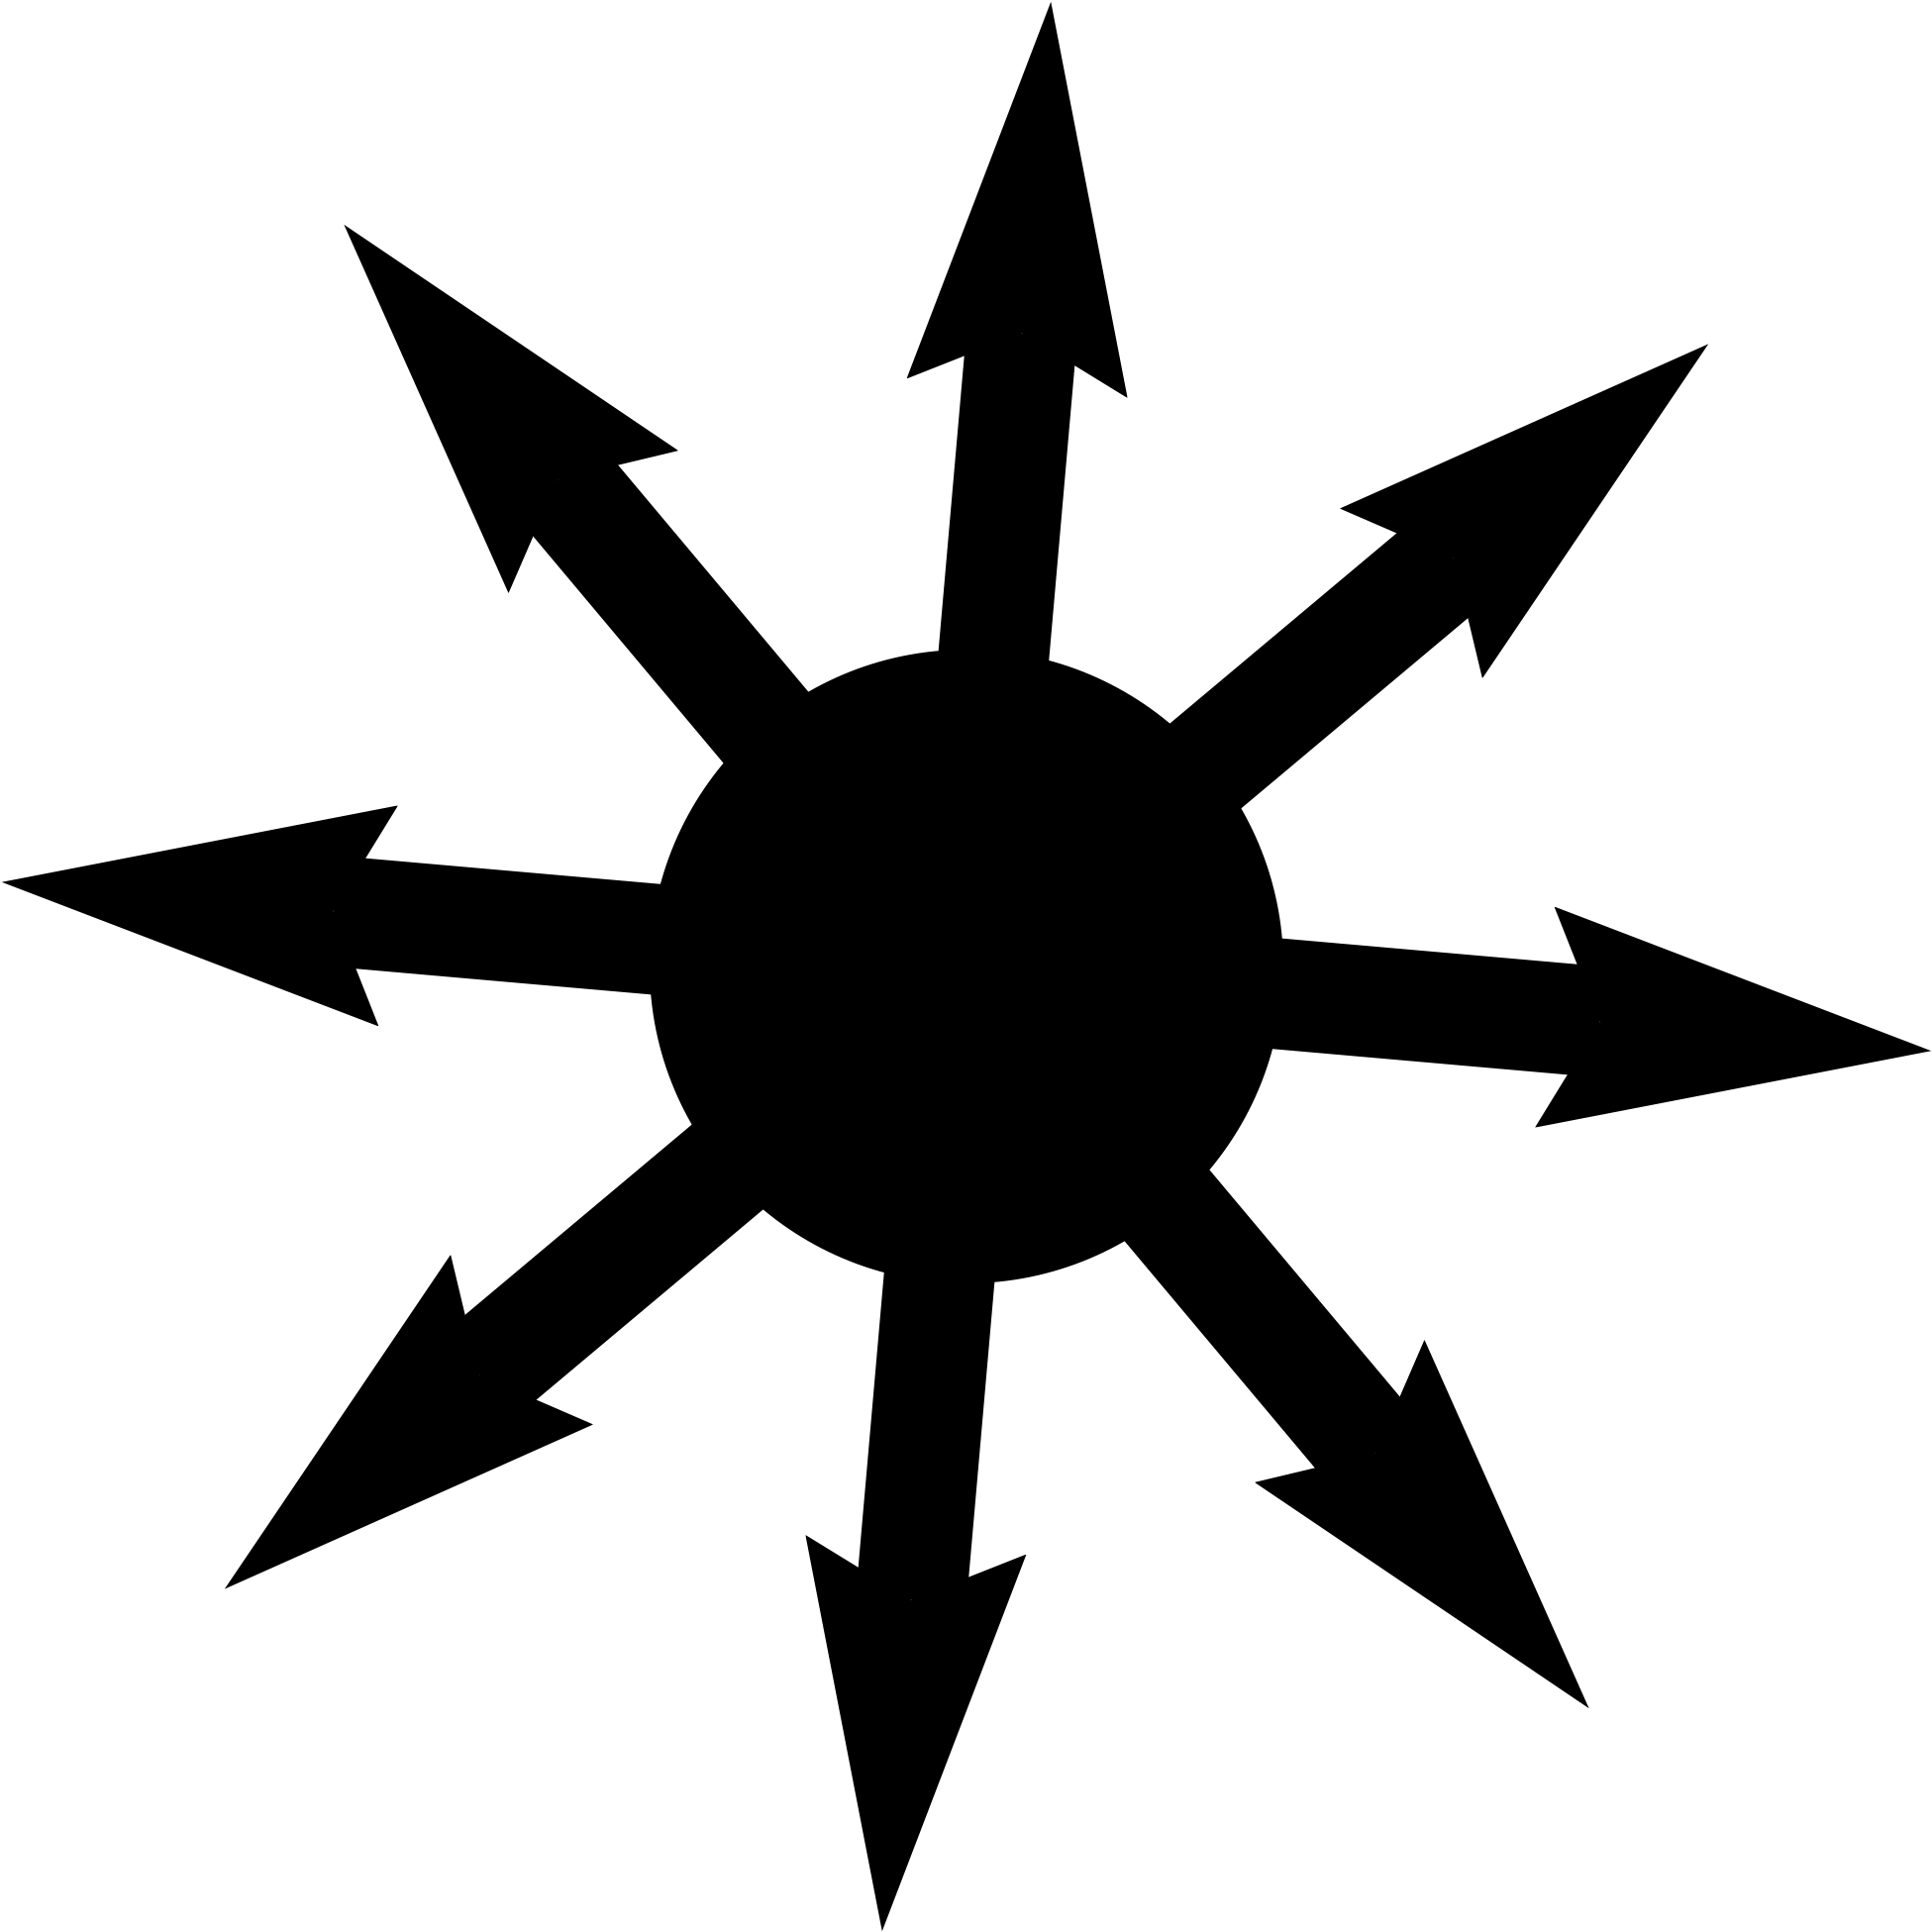 Cerca Con Google - Black Hole Symbol (2000x2000)